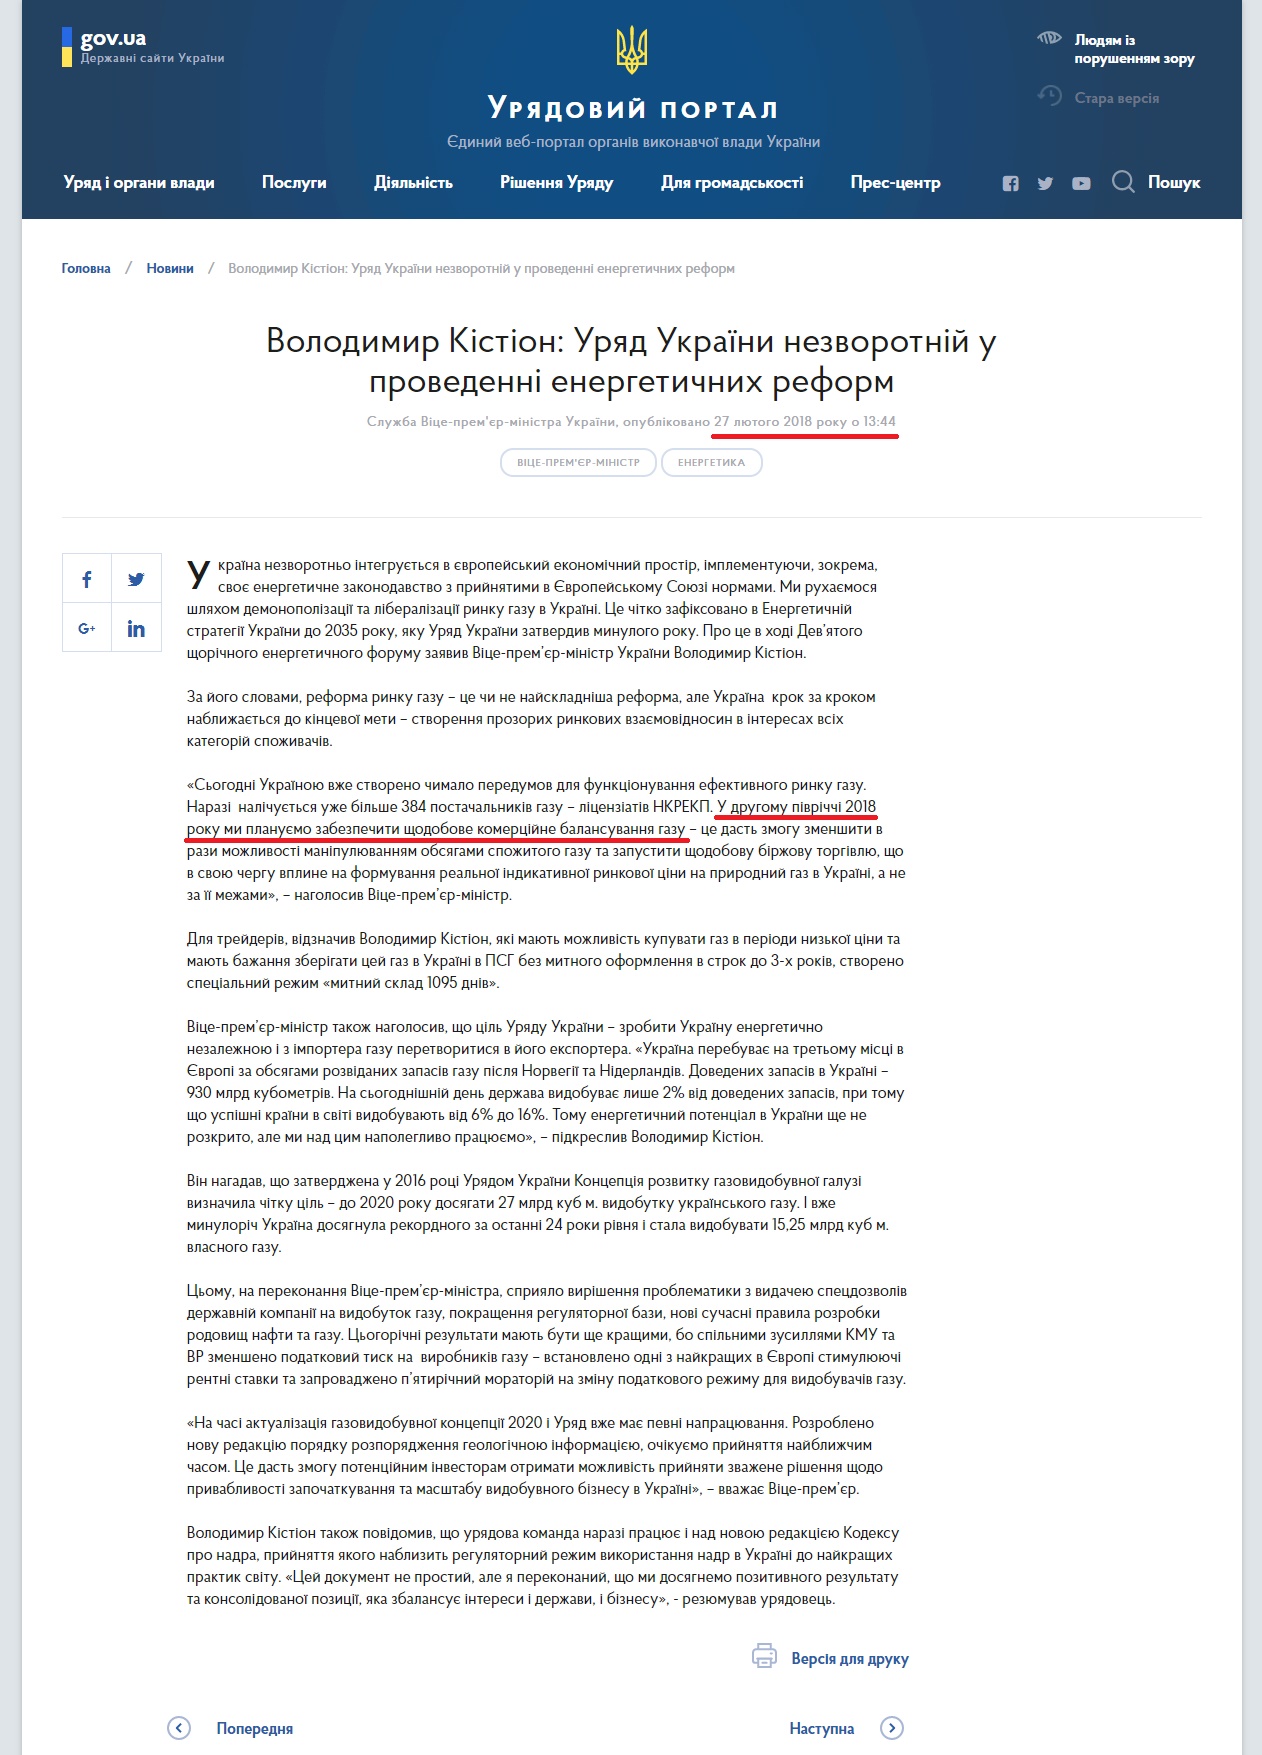 https://www.kmu.gov.ua/ua/news/volodimir-kistion-uryad-ukrayini-nezvorotnij-v-provedeni-energetichnih-reform